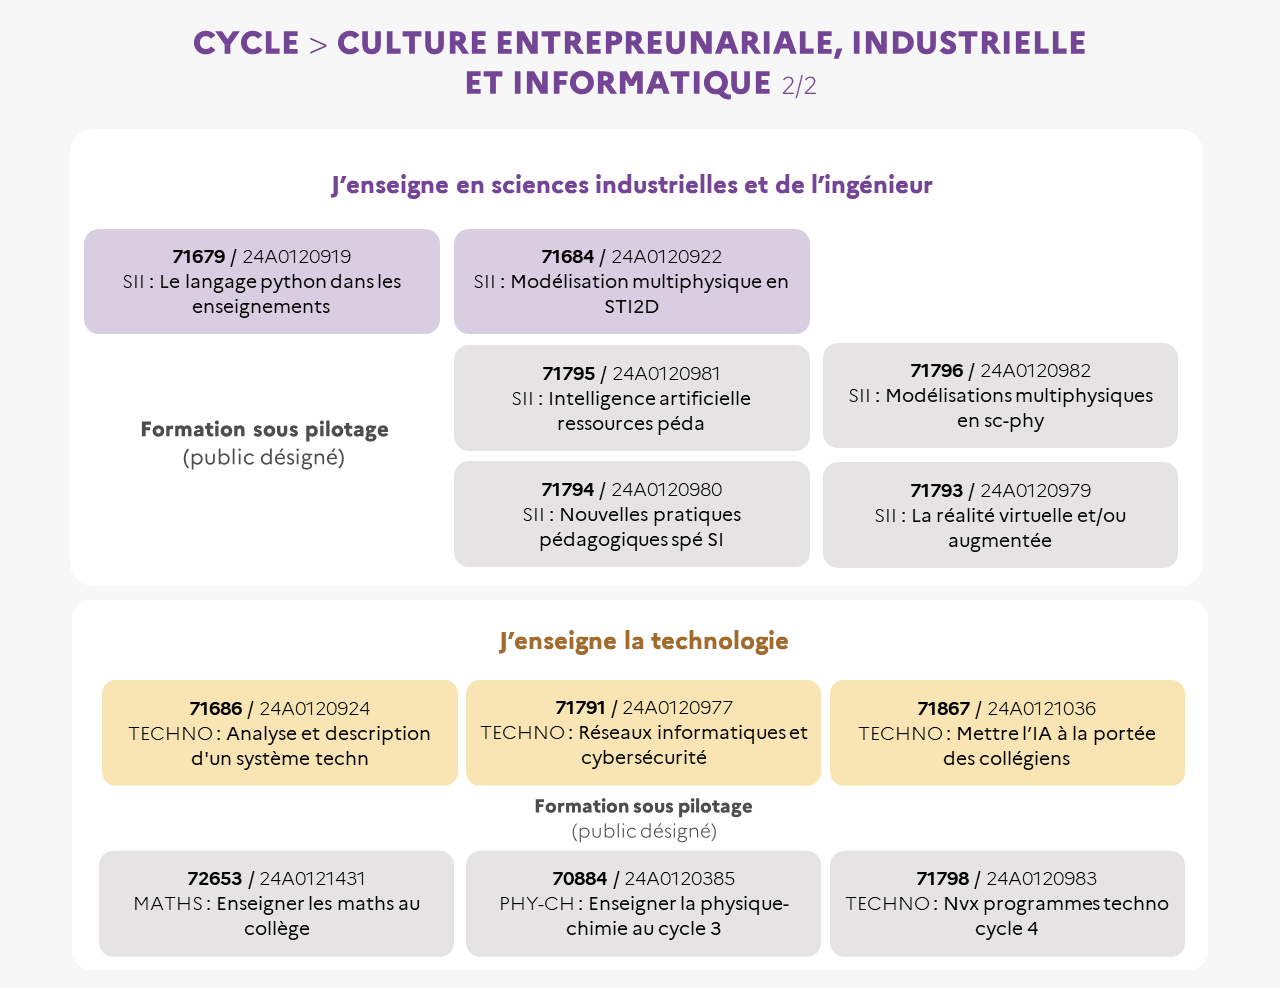 EAFC - Infographie cycle Culture entrepreunariale, industrielle et informatique 2/2